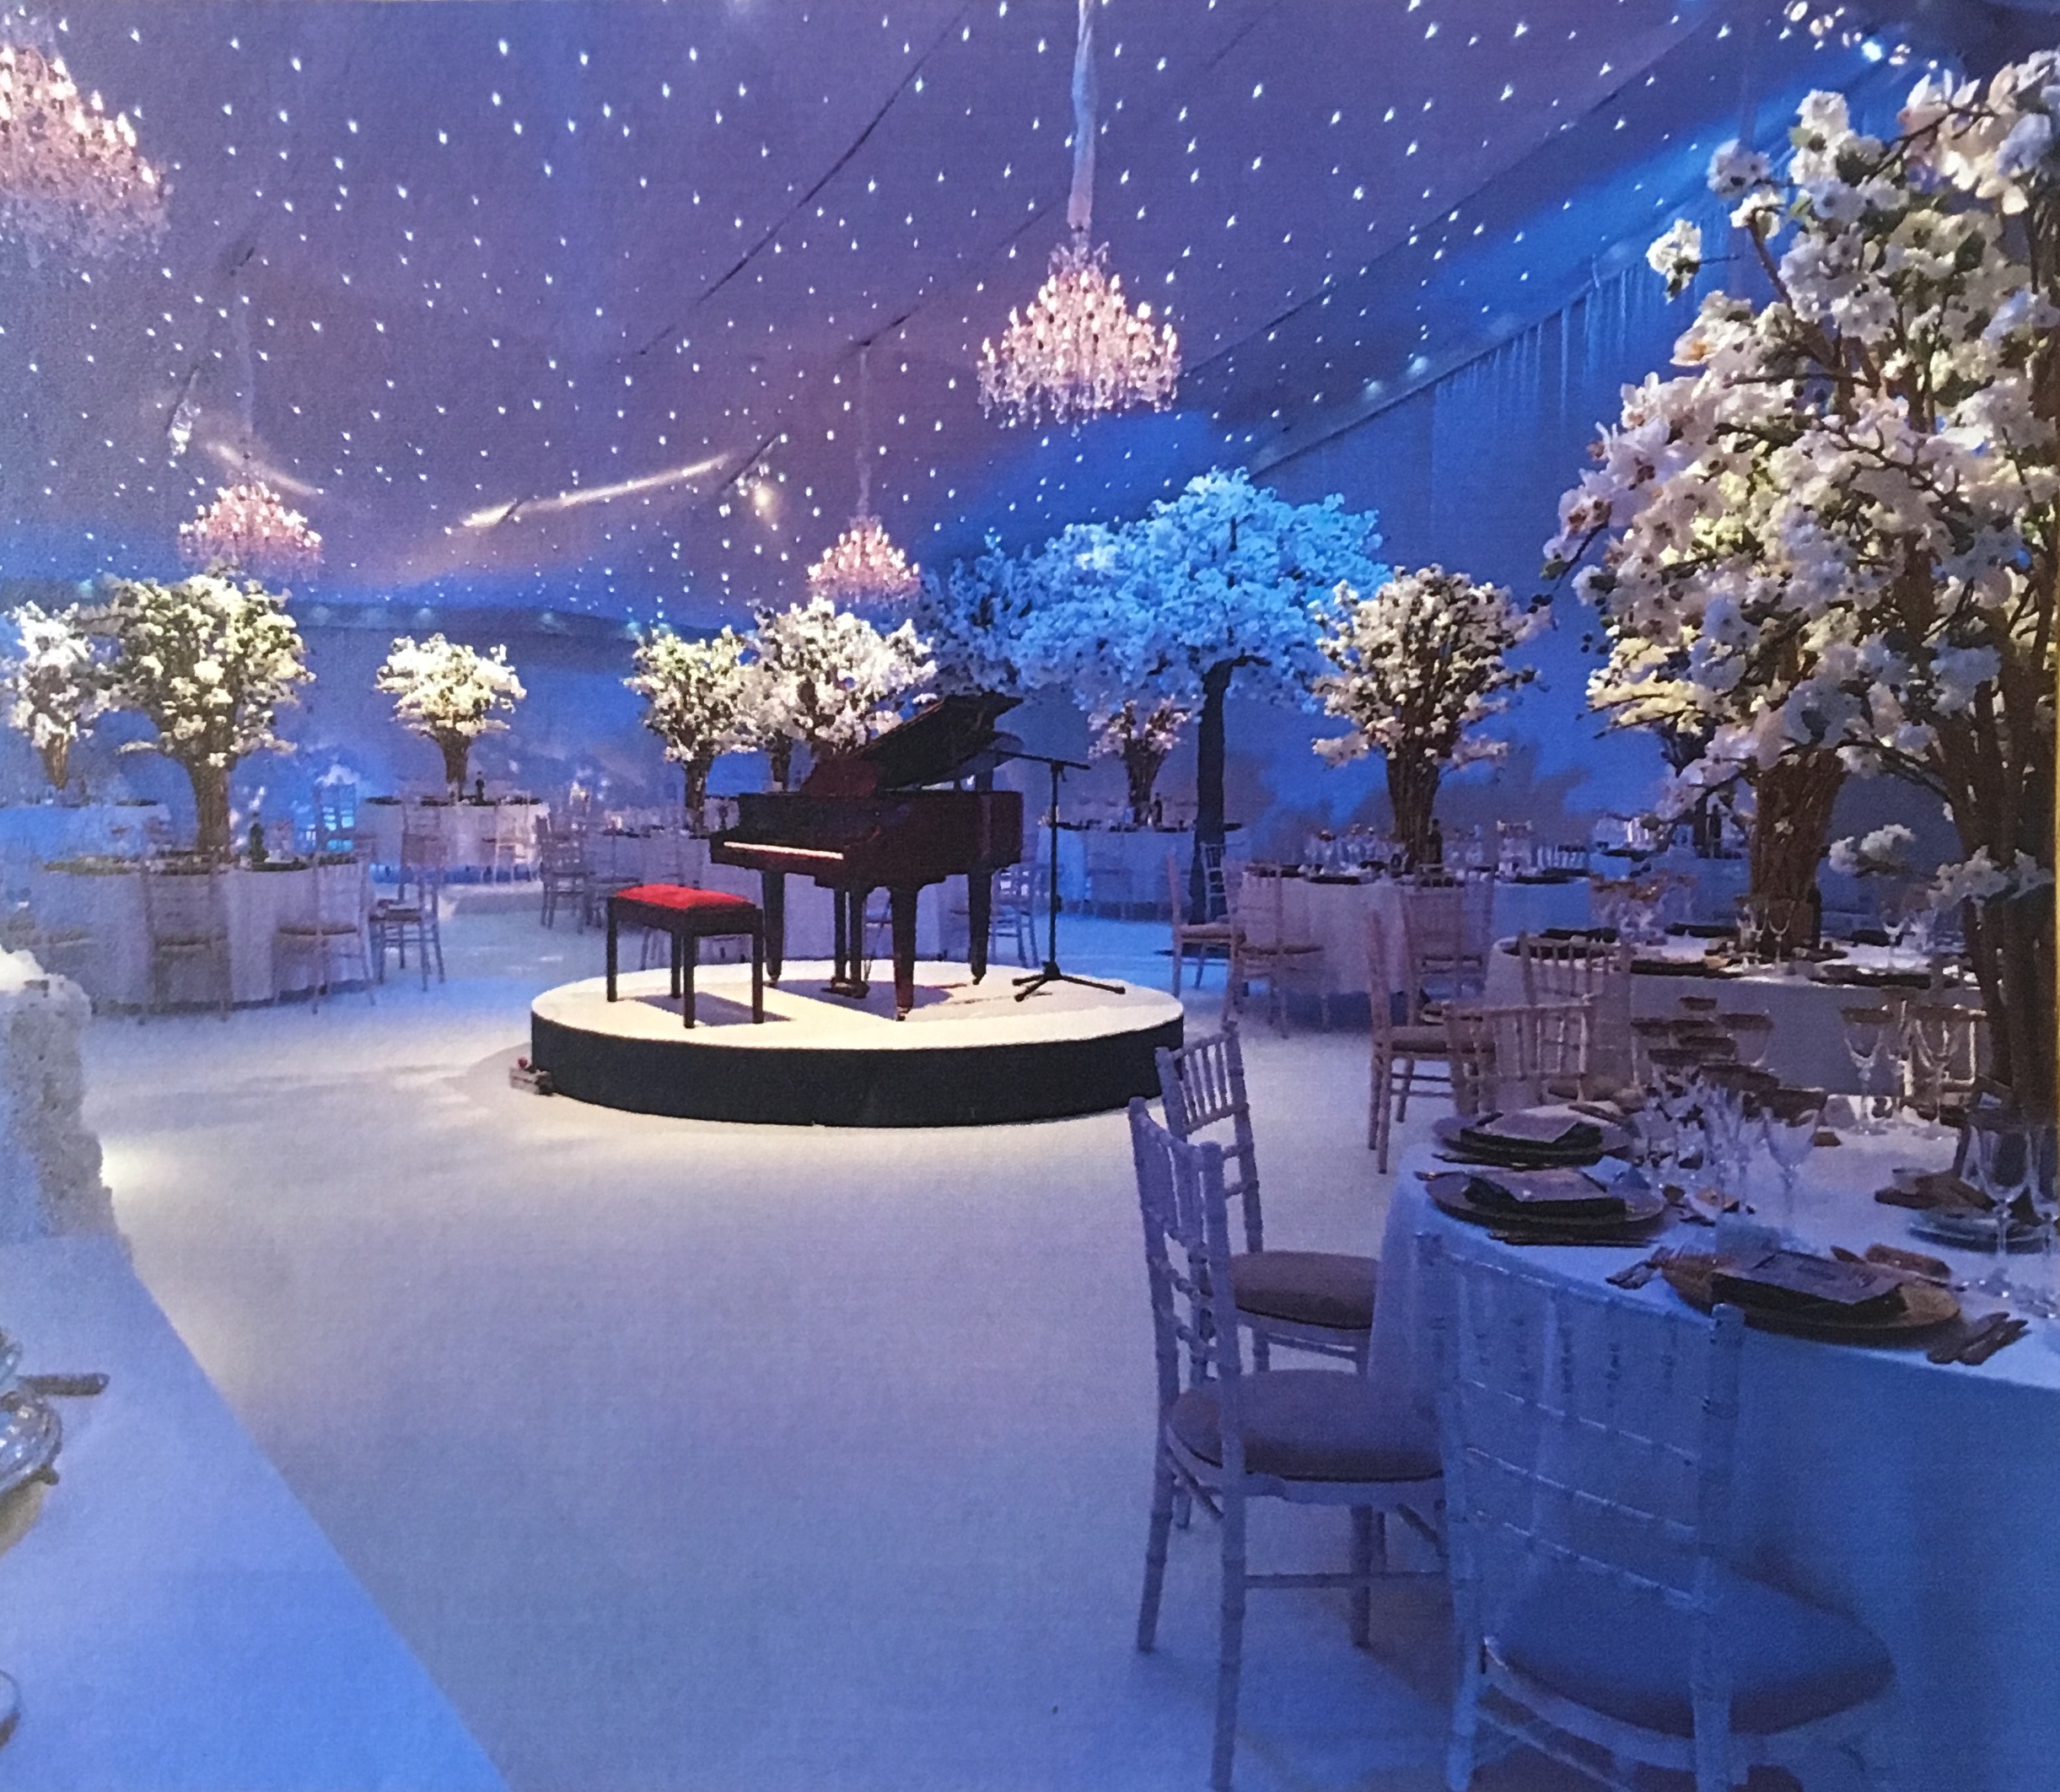 Planning a Winter Wedding Wonderland